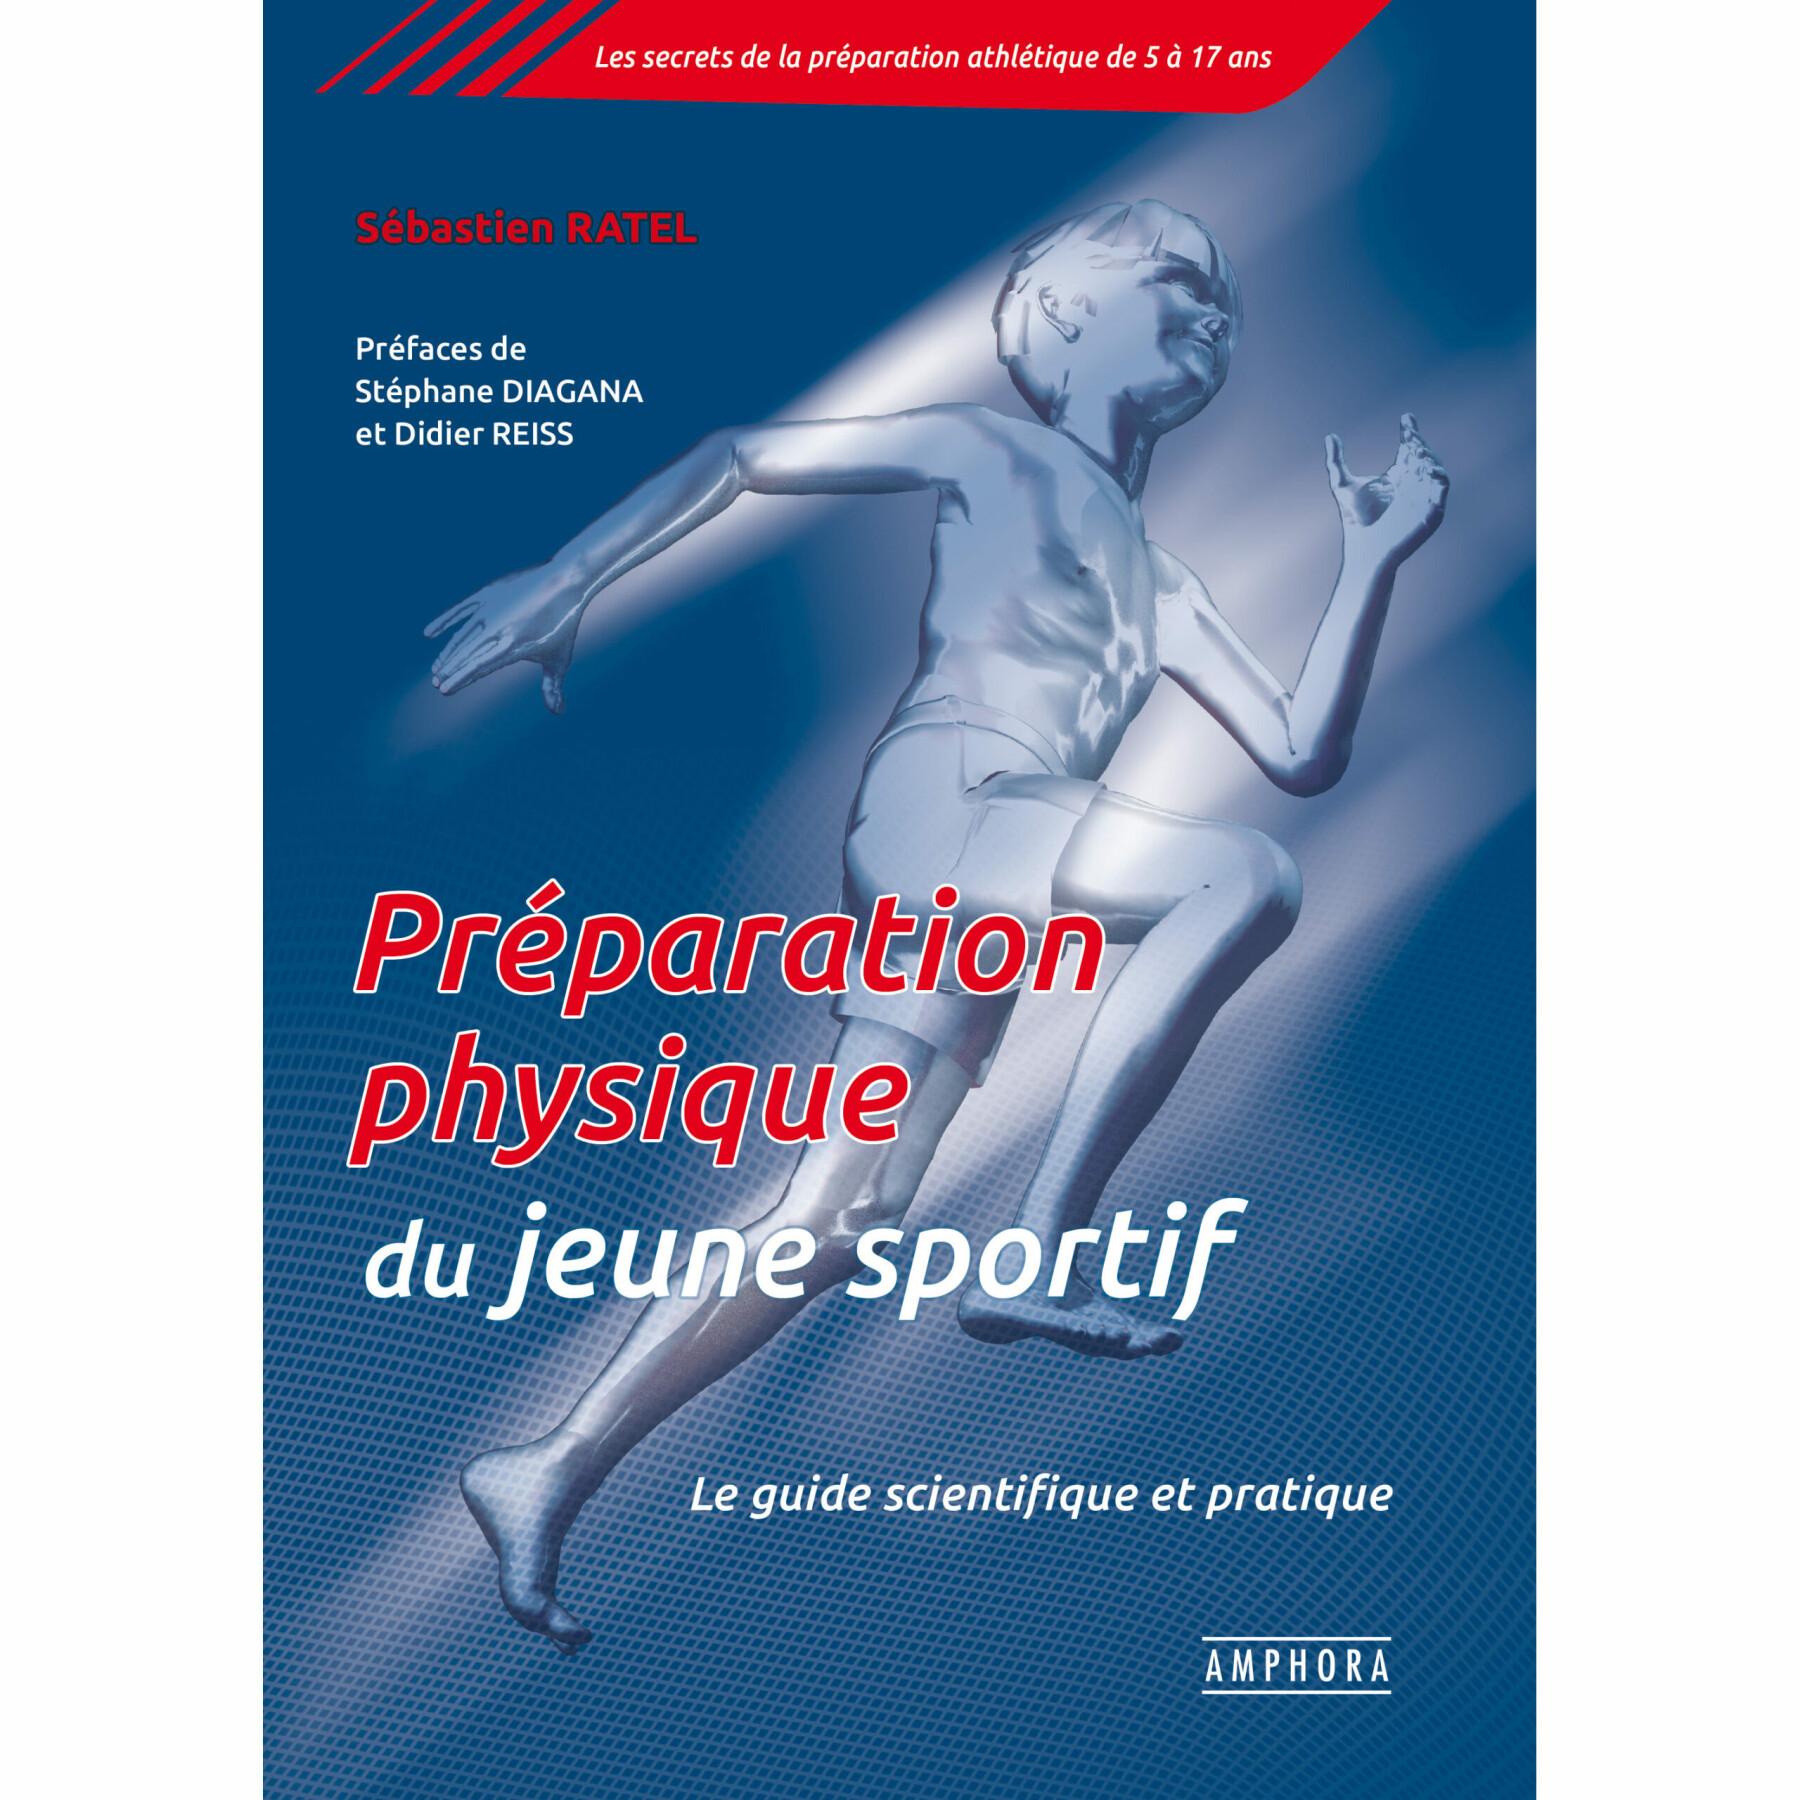 Livro sobre preparação física de jovens atletas Amphora